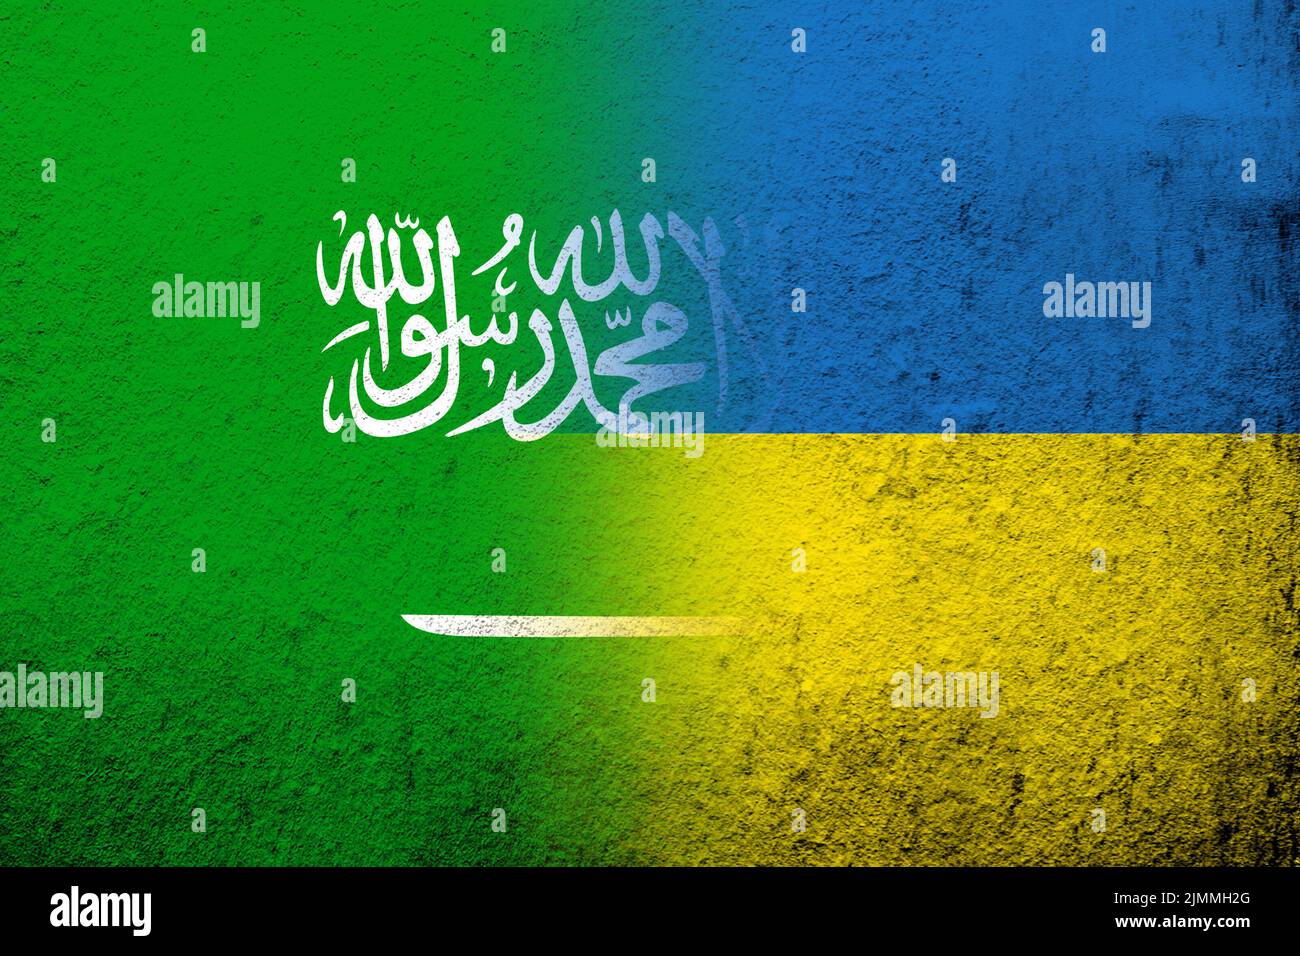 Le Royaume d'Arabie saoudite drapeau national avec drapeau national de l'Ukraine. Grunge l'arrière-plan Banque D'Images